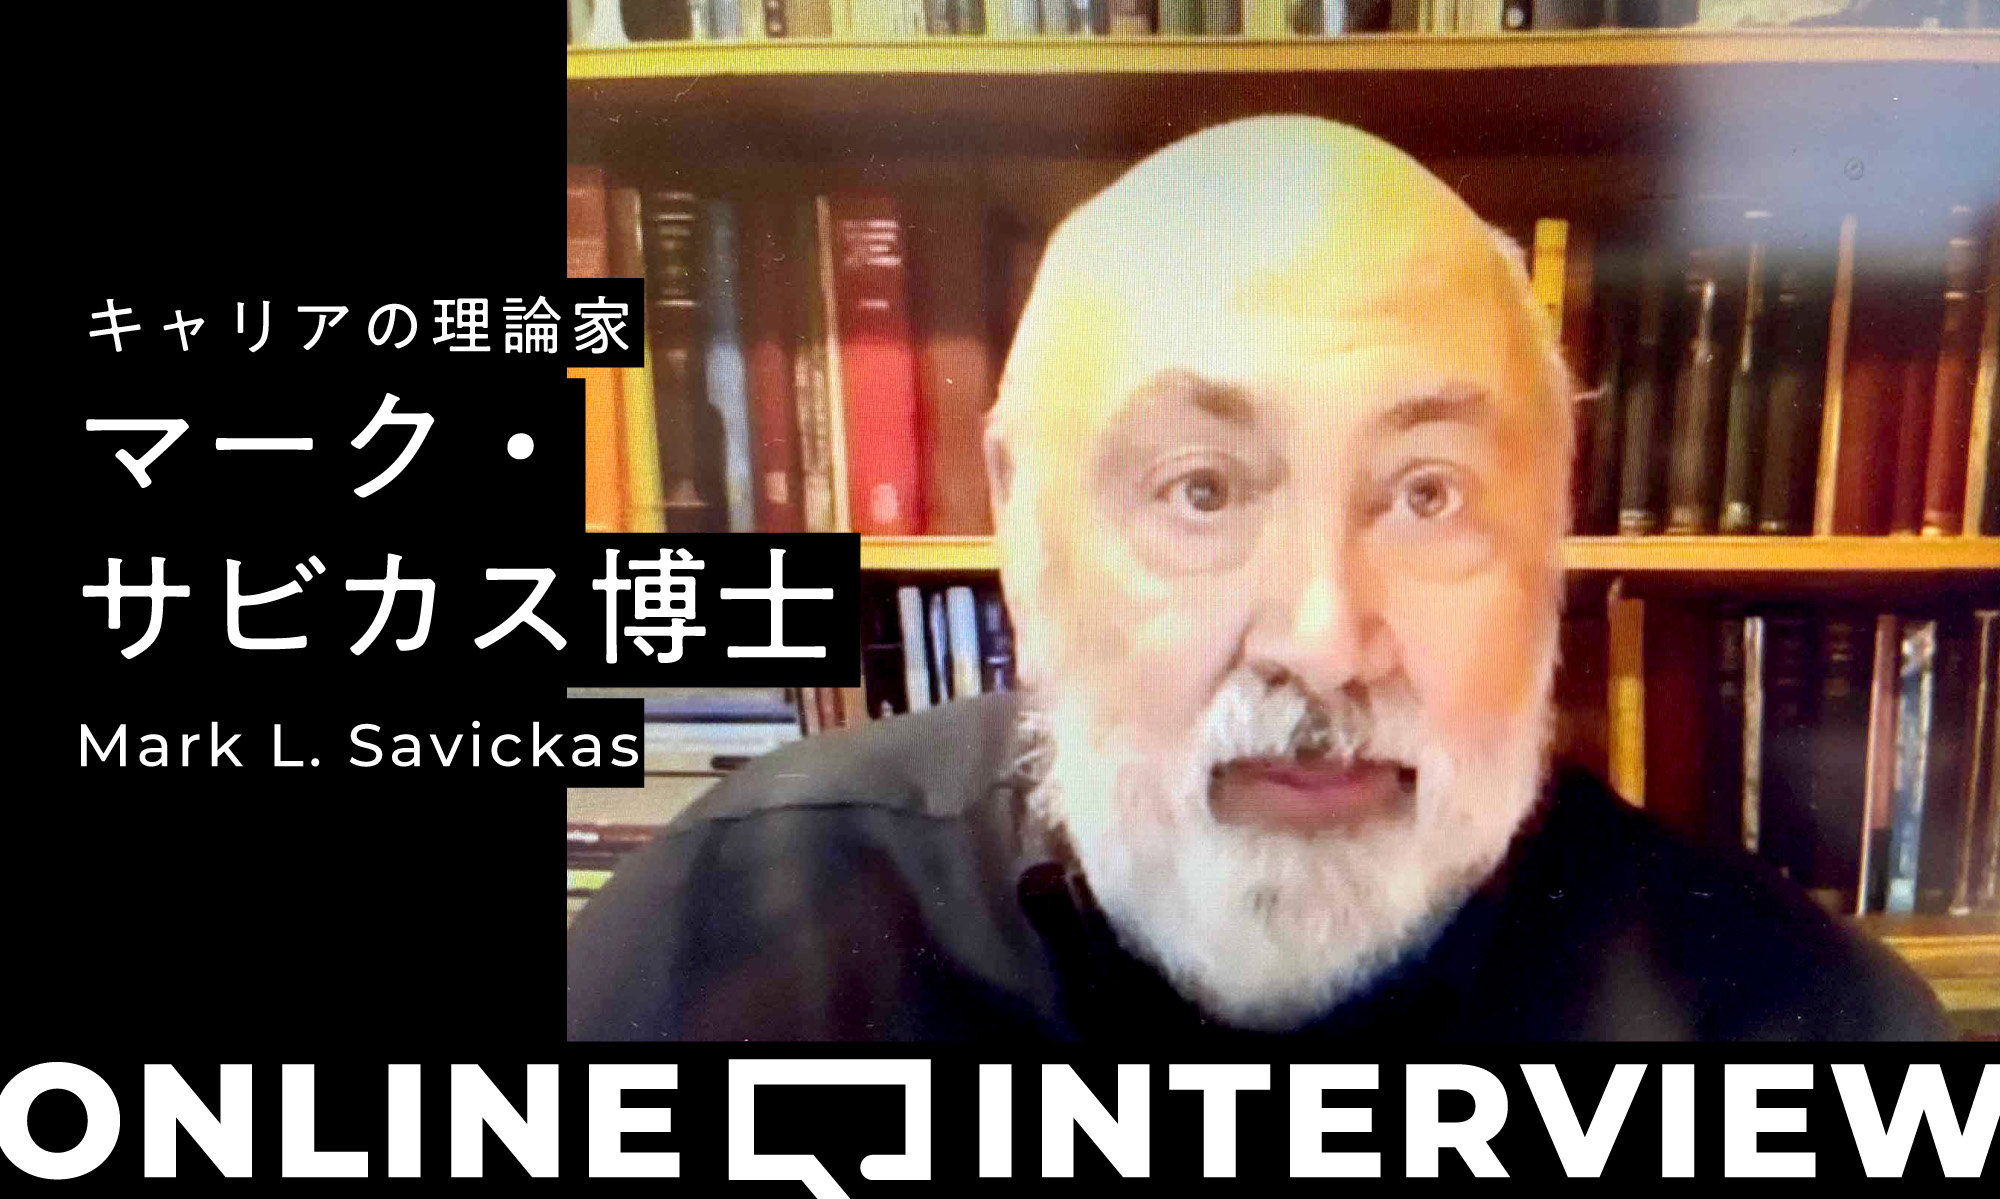 マーク・サビカス博士「コロナ禍におけるキャリア支援」 オンラインインタビュー（前編）